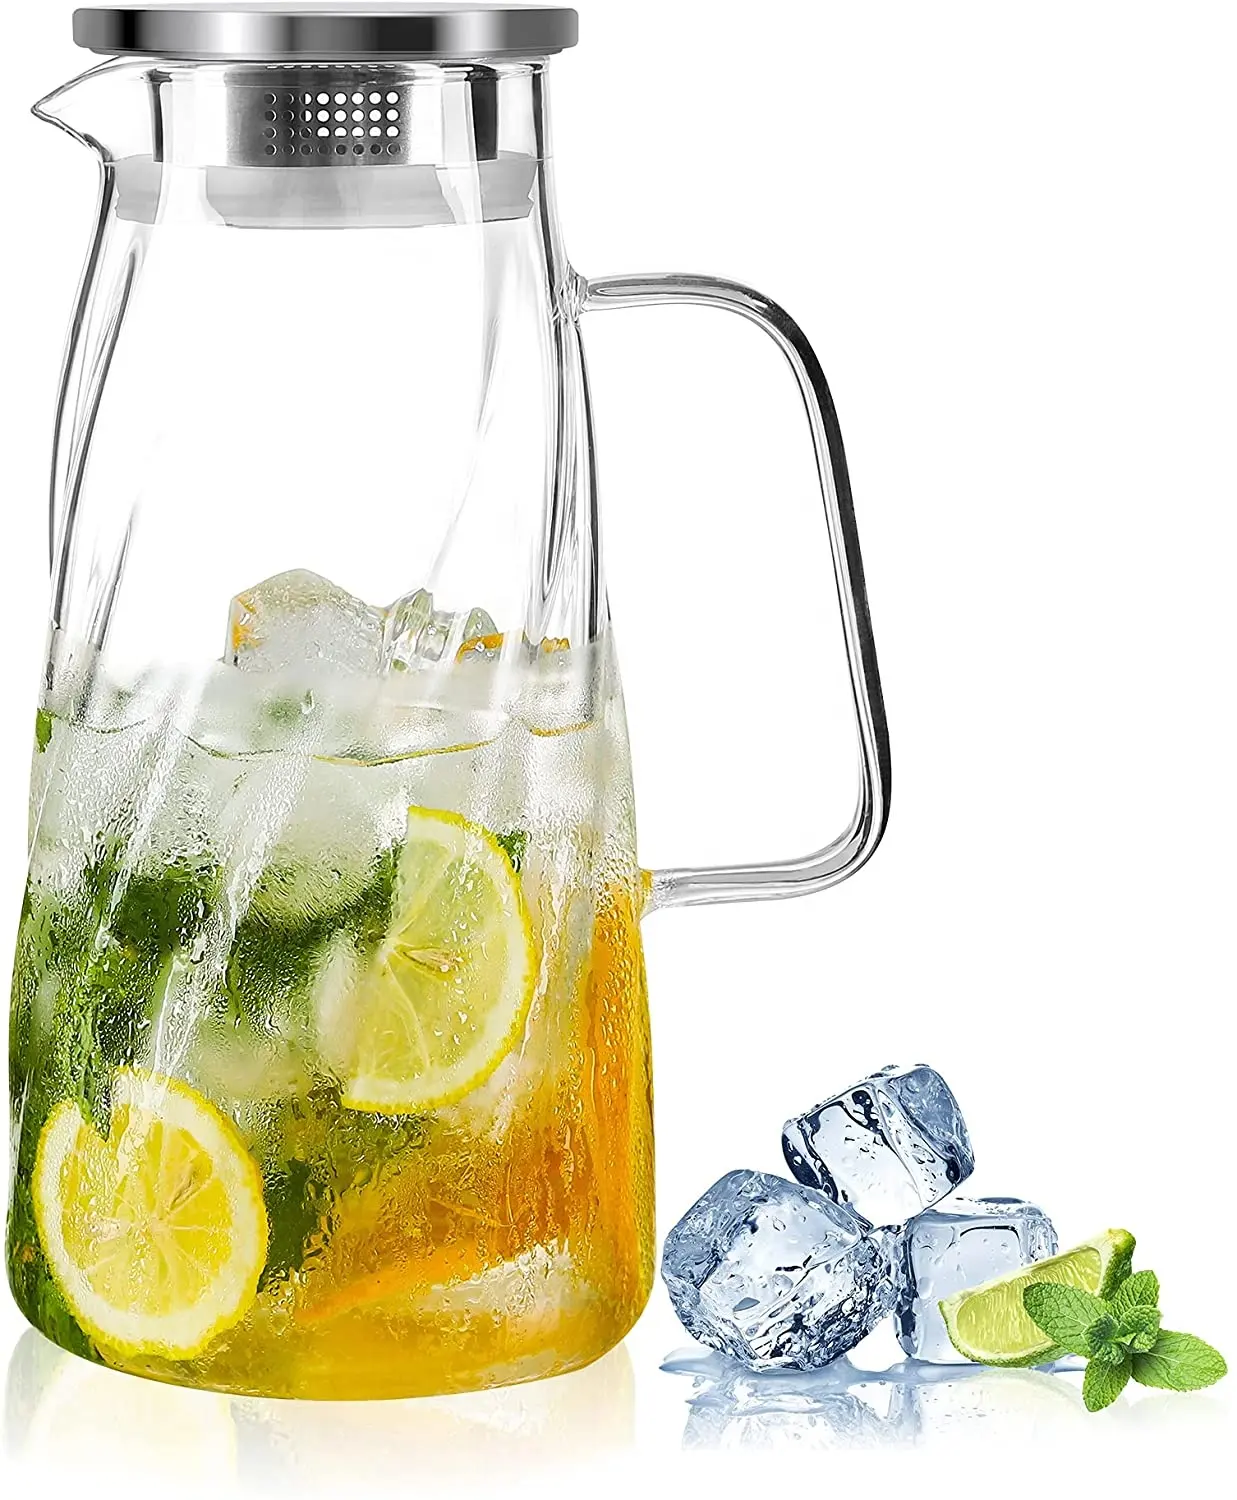 Wasserglas Karaffe Wasserkrug mit Deckel für Kühlschrank Eistee Krug 57 OZ Glas Wasserkrug Krug Sets Glas Karaffe Saft Krug